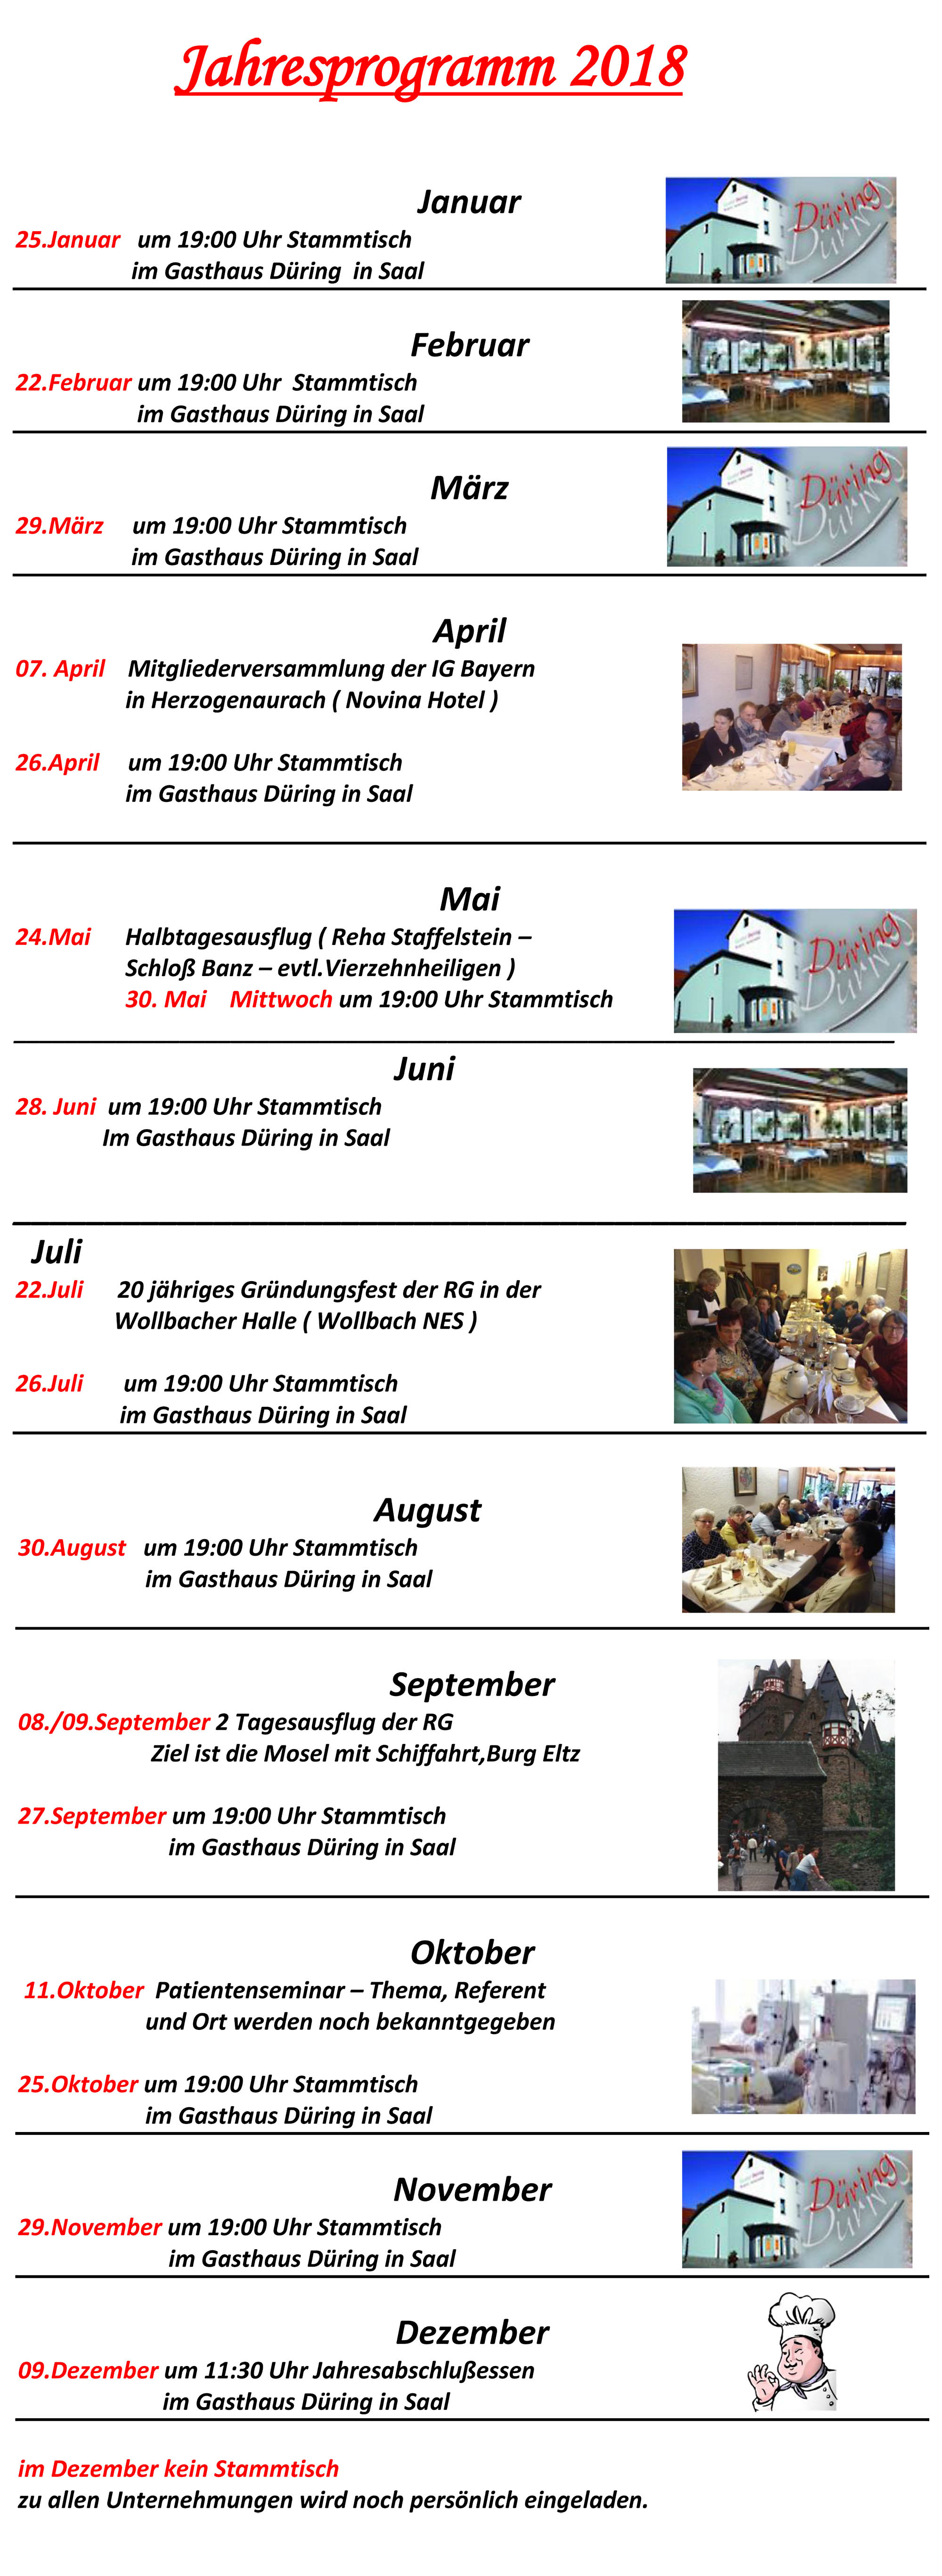 Jahresprogramm Regionalgruppe Rhön-Grabfeld